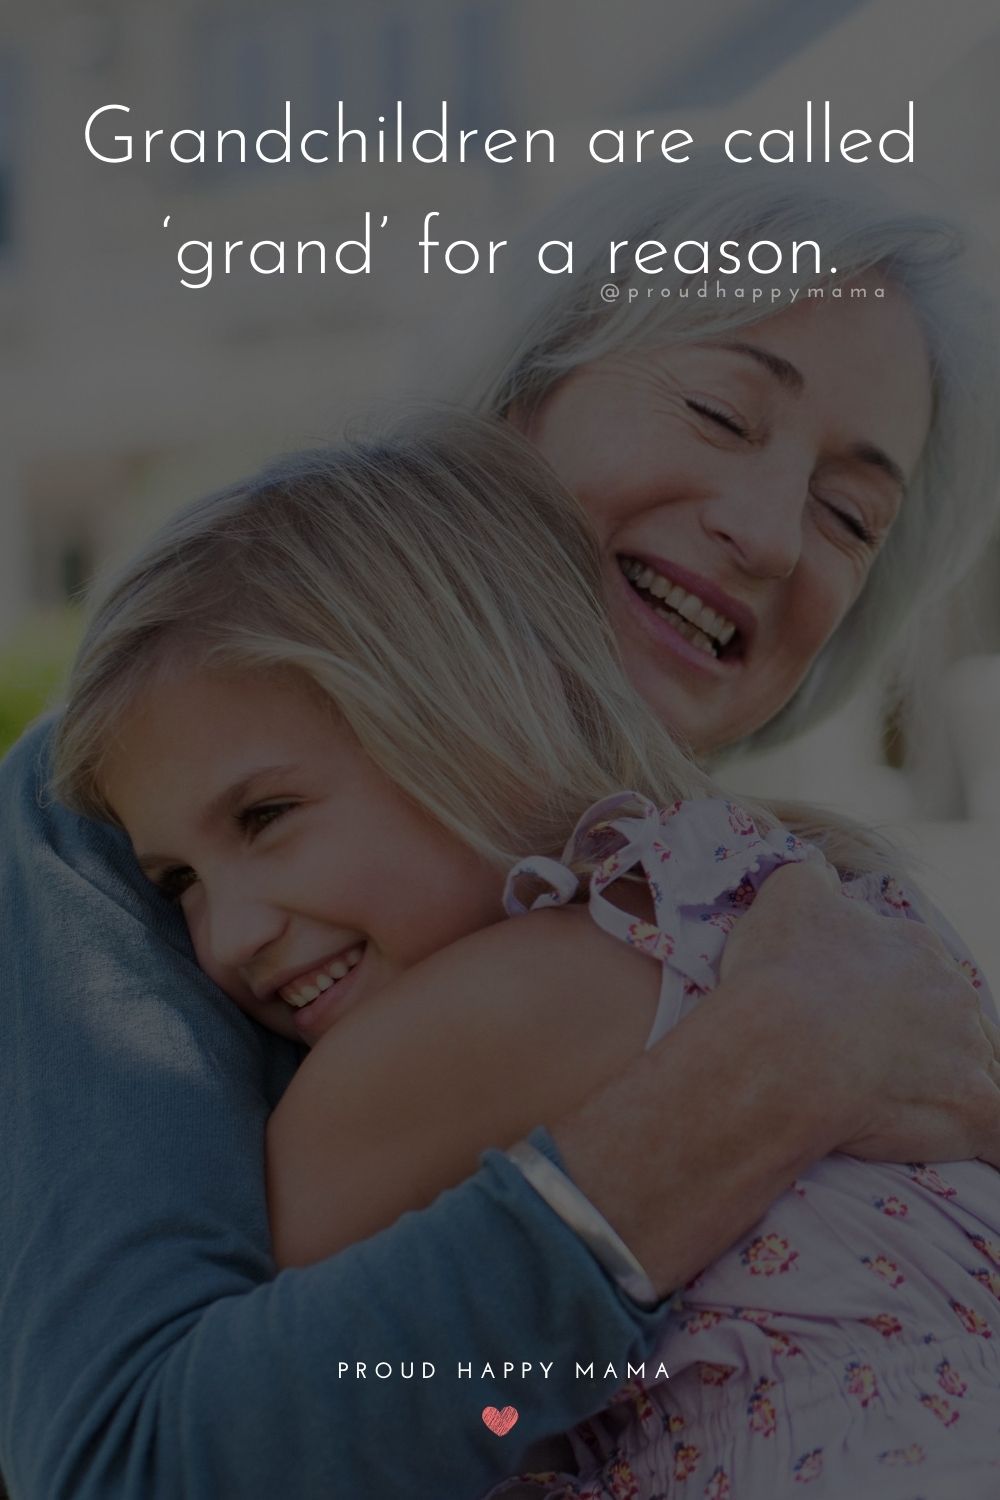 Grandkids Quotes - Grandchildren are called ‘grand’ for a reason.